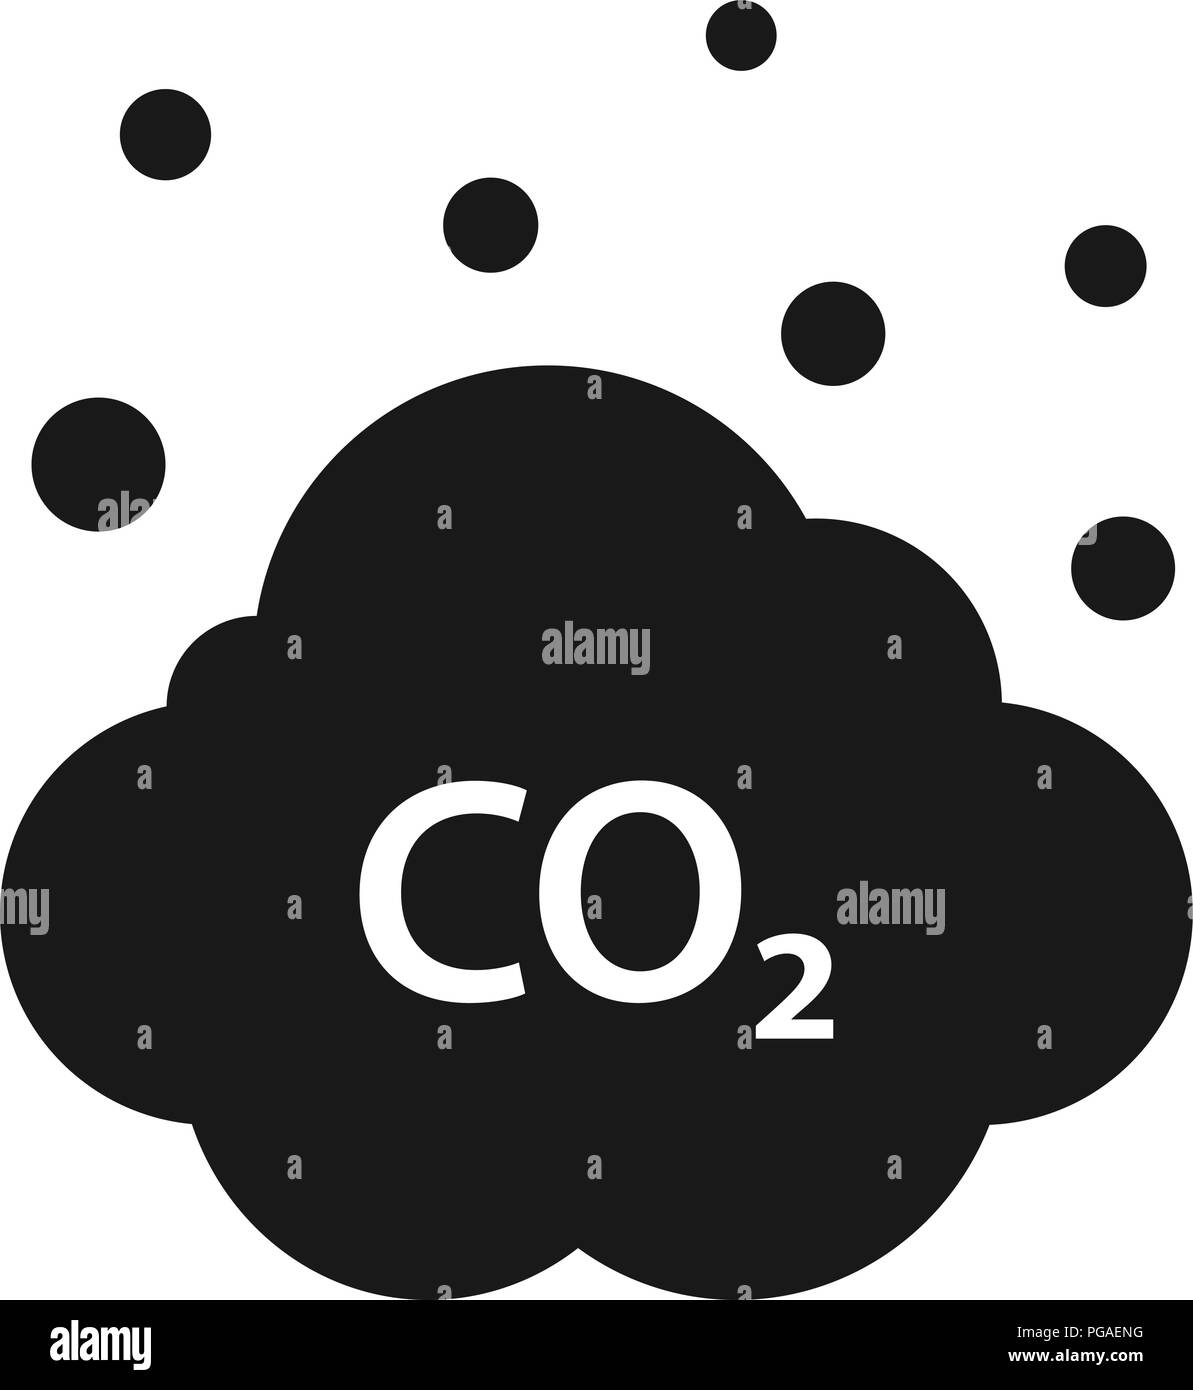 Wolke von CO2, CO2-Emissionen, Verringerung der Umweltverschmutzung Symbol. Ökologie Umwelt Reinigung Stock Vektor